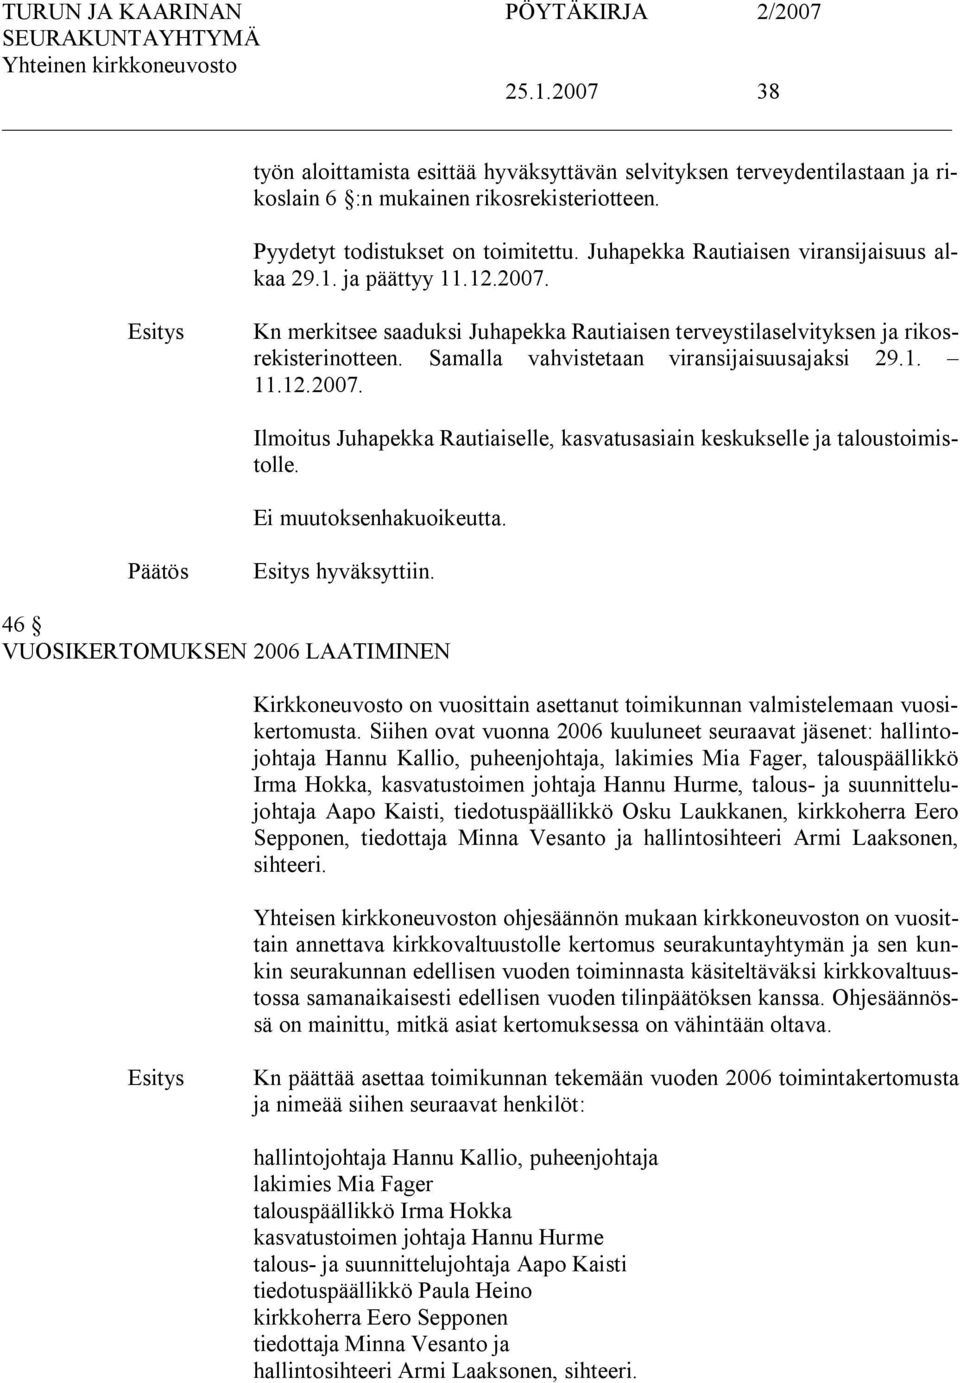 Samalla vahvistetaan viransijaisuusajaksi 29.1. 11.12.2007. Ilmoitus Juhapekka Rautiaiselle, kasvatusasiain keskukselle ja taloustoimistolle. hyväksyttiin.